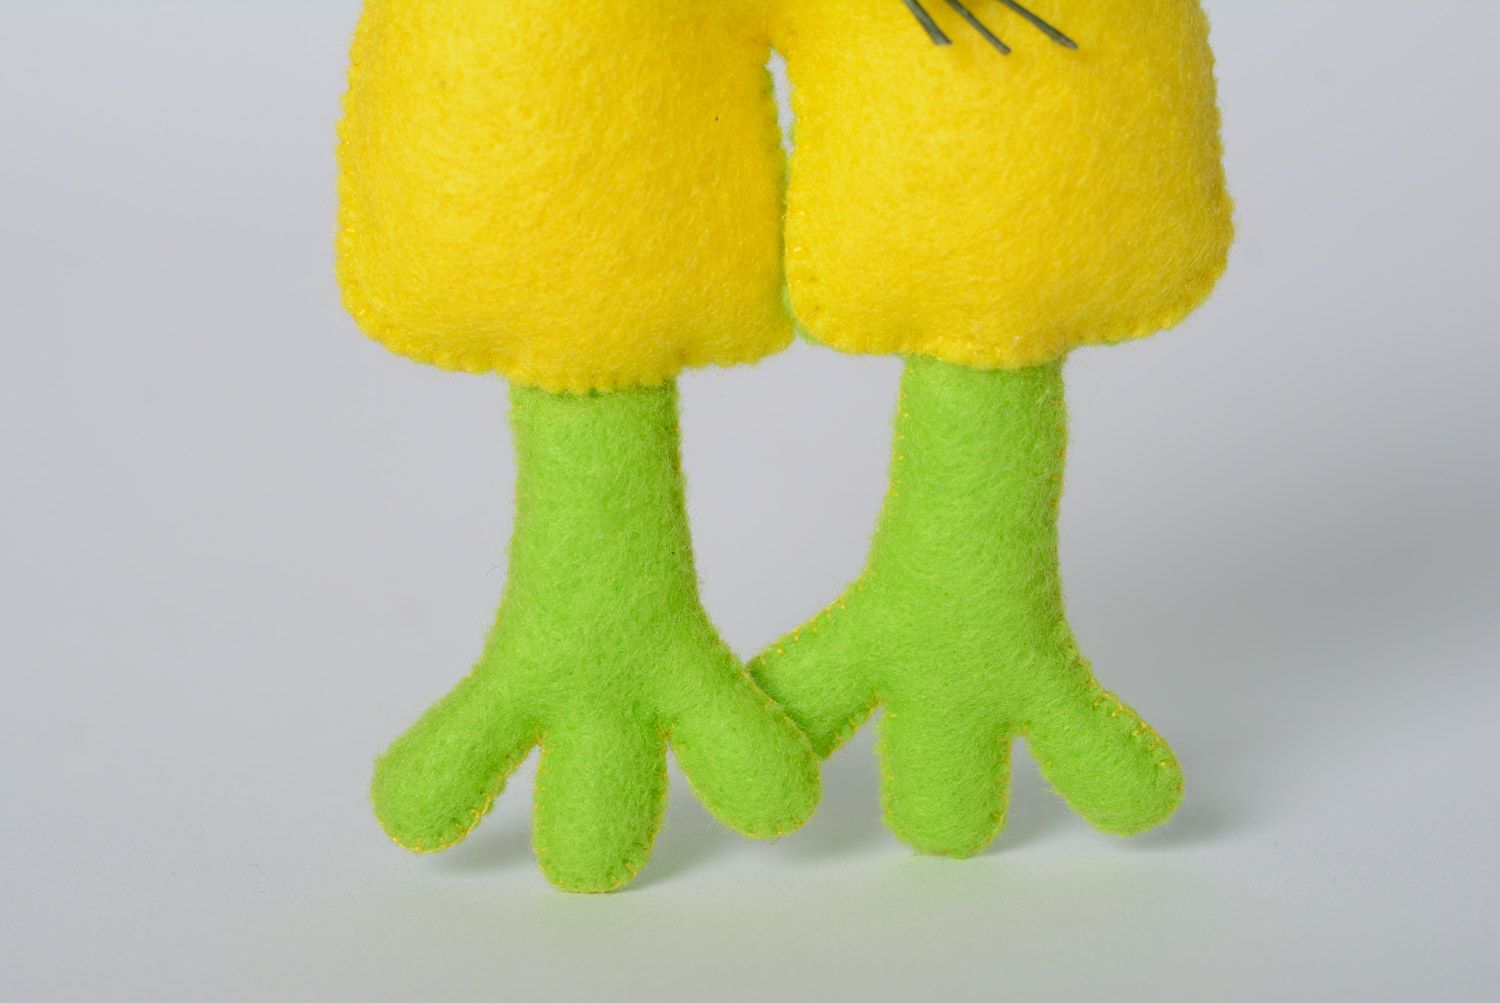 Jouet mou amusant fait main vert jaune en feutre petite grenouille sympa photo 4